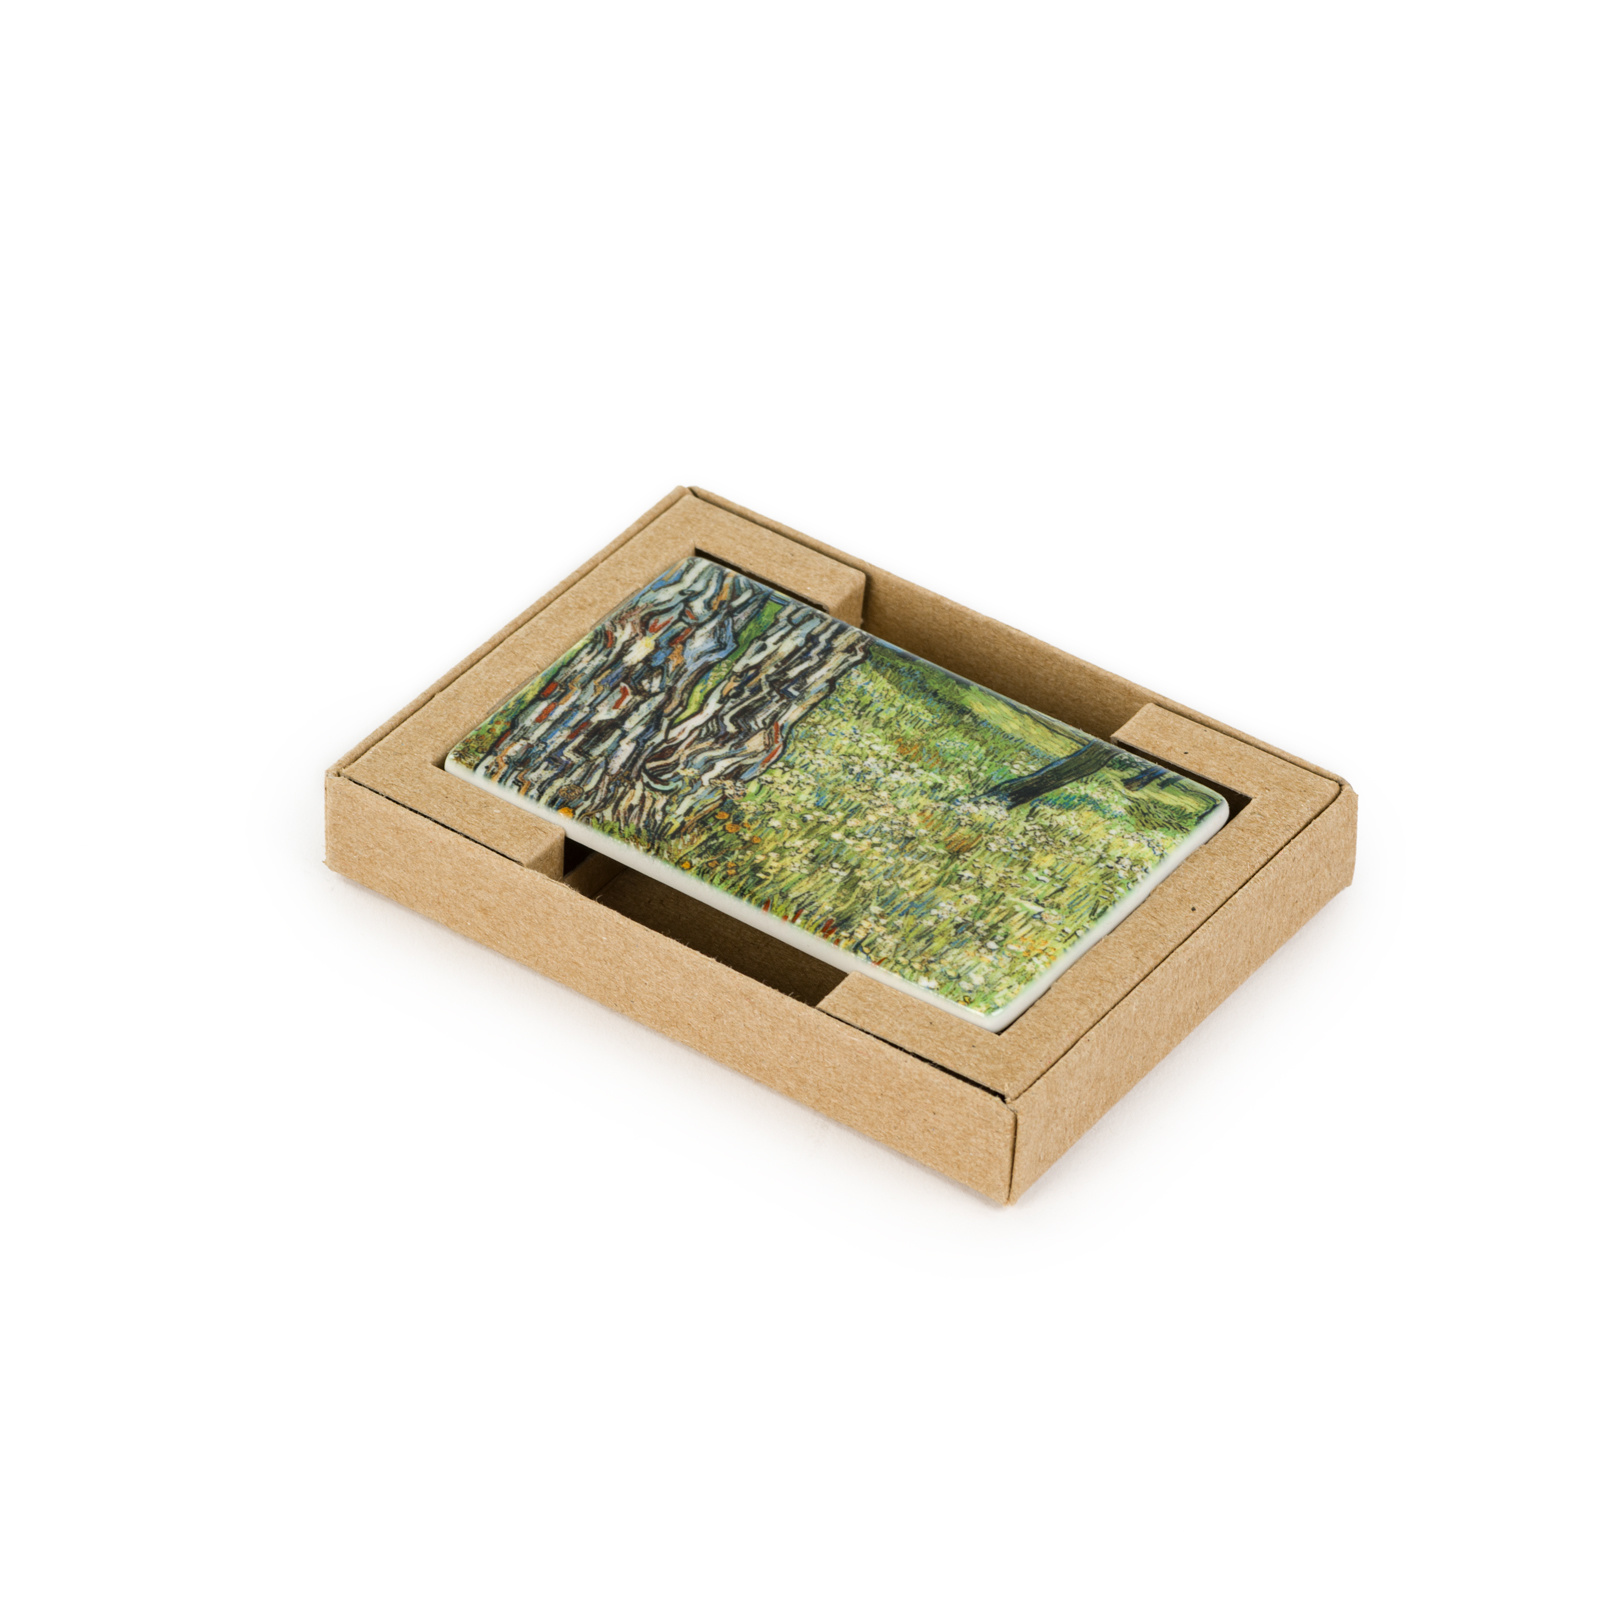 Ceramic fridge magnet Van Gogh Tree trunks in the grass